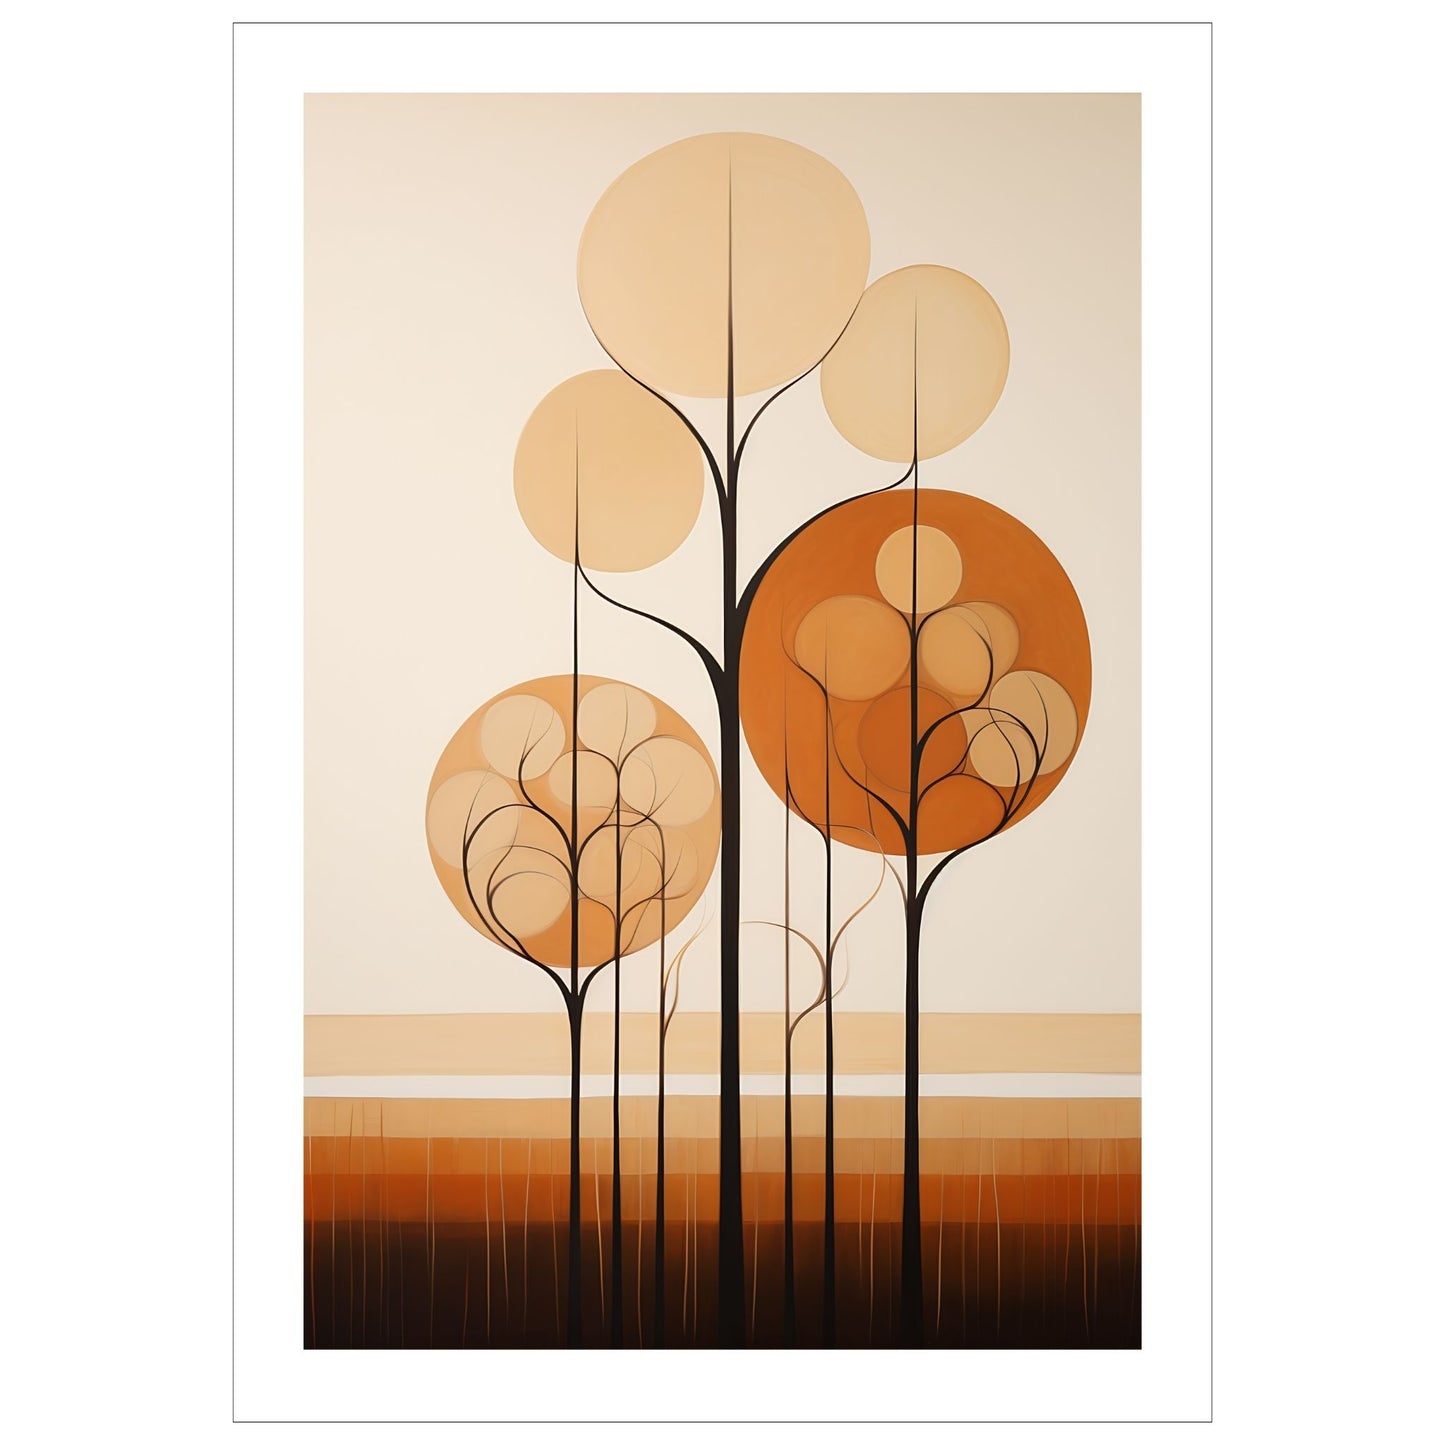 Abstract Forest - grafisk og abstrakt motiv av høye, slanke trær og skog i rust- og beige fargetoner.